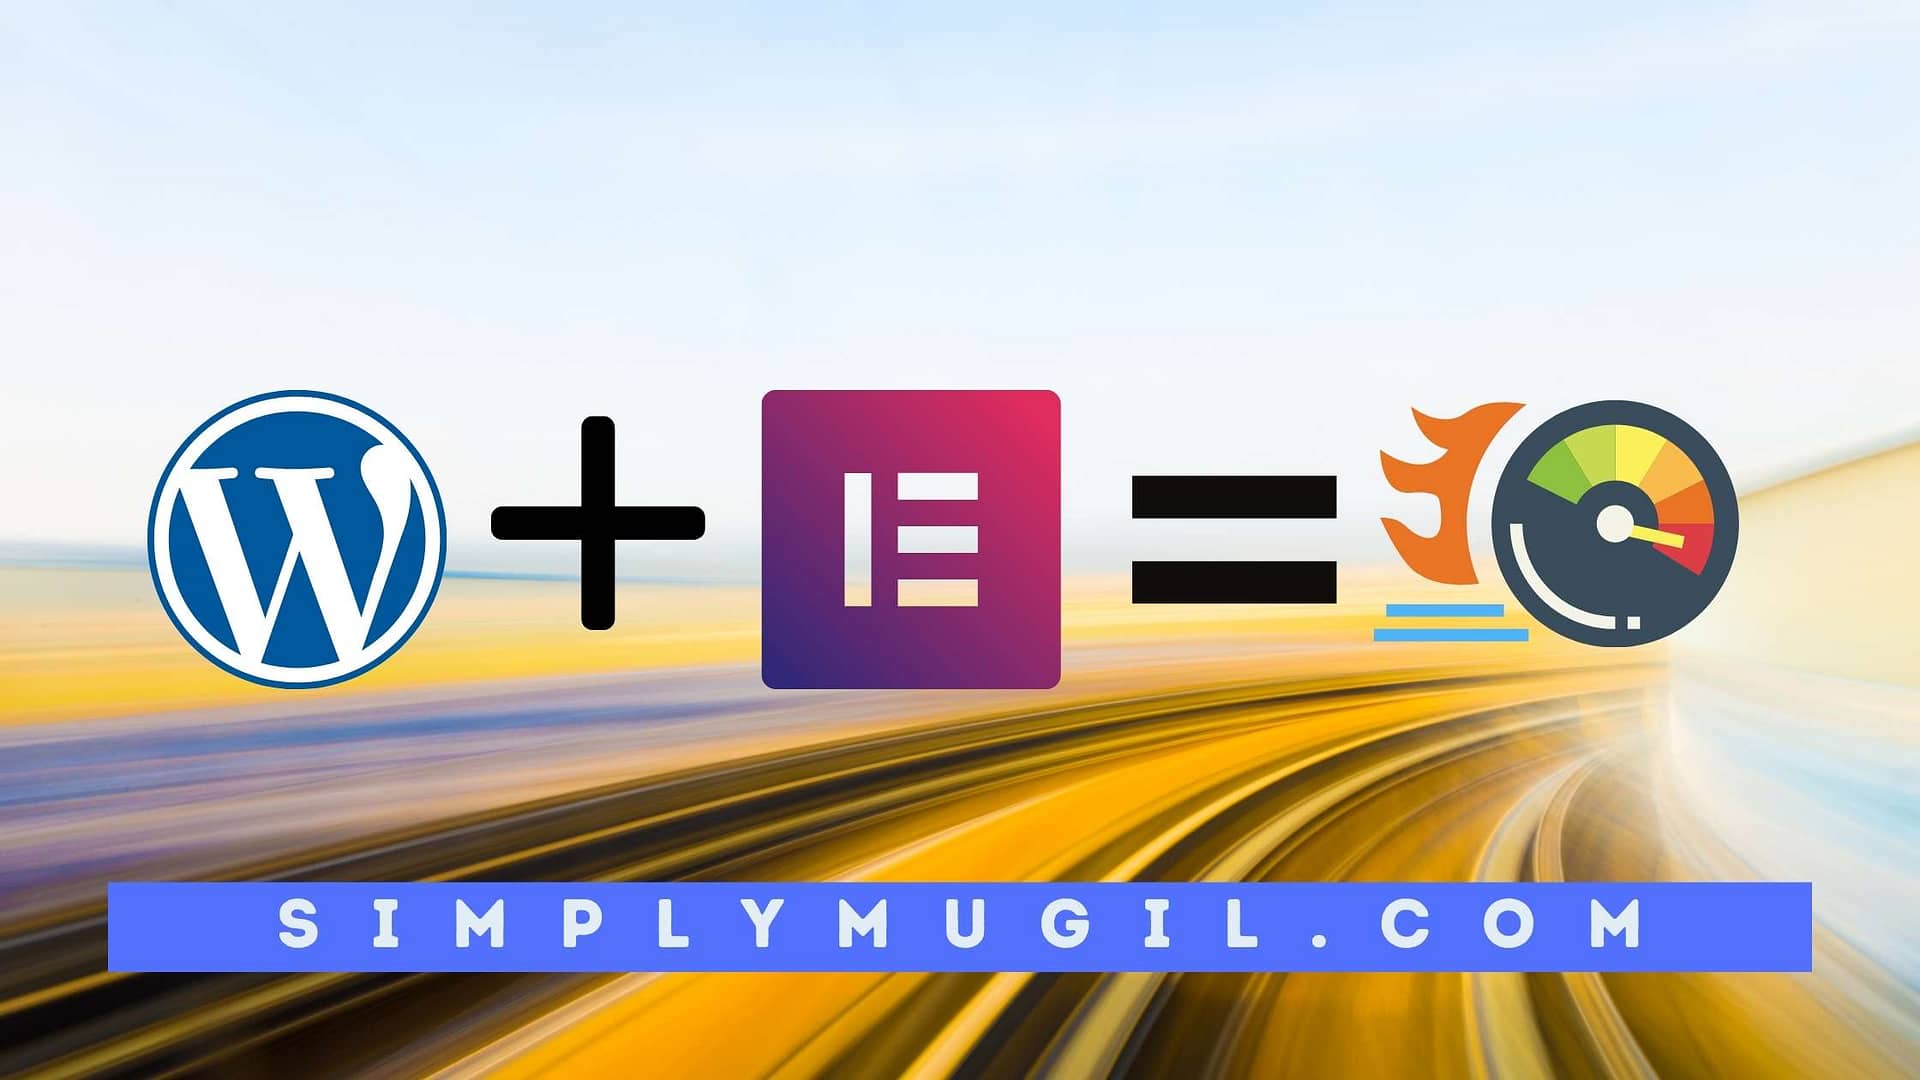 Simplymugil.com- How to write blog posts quickly